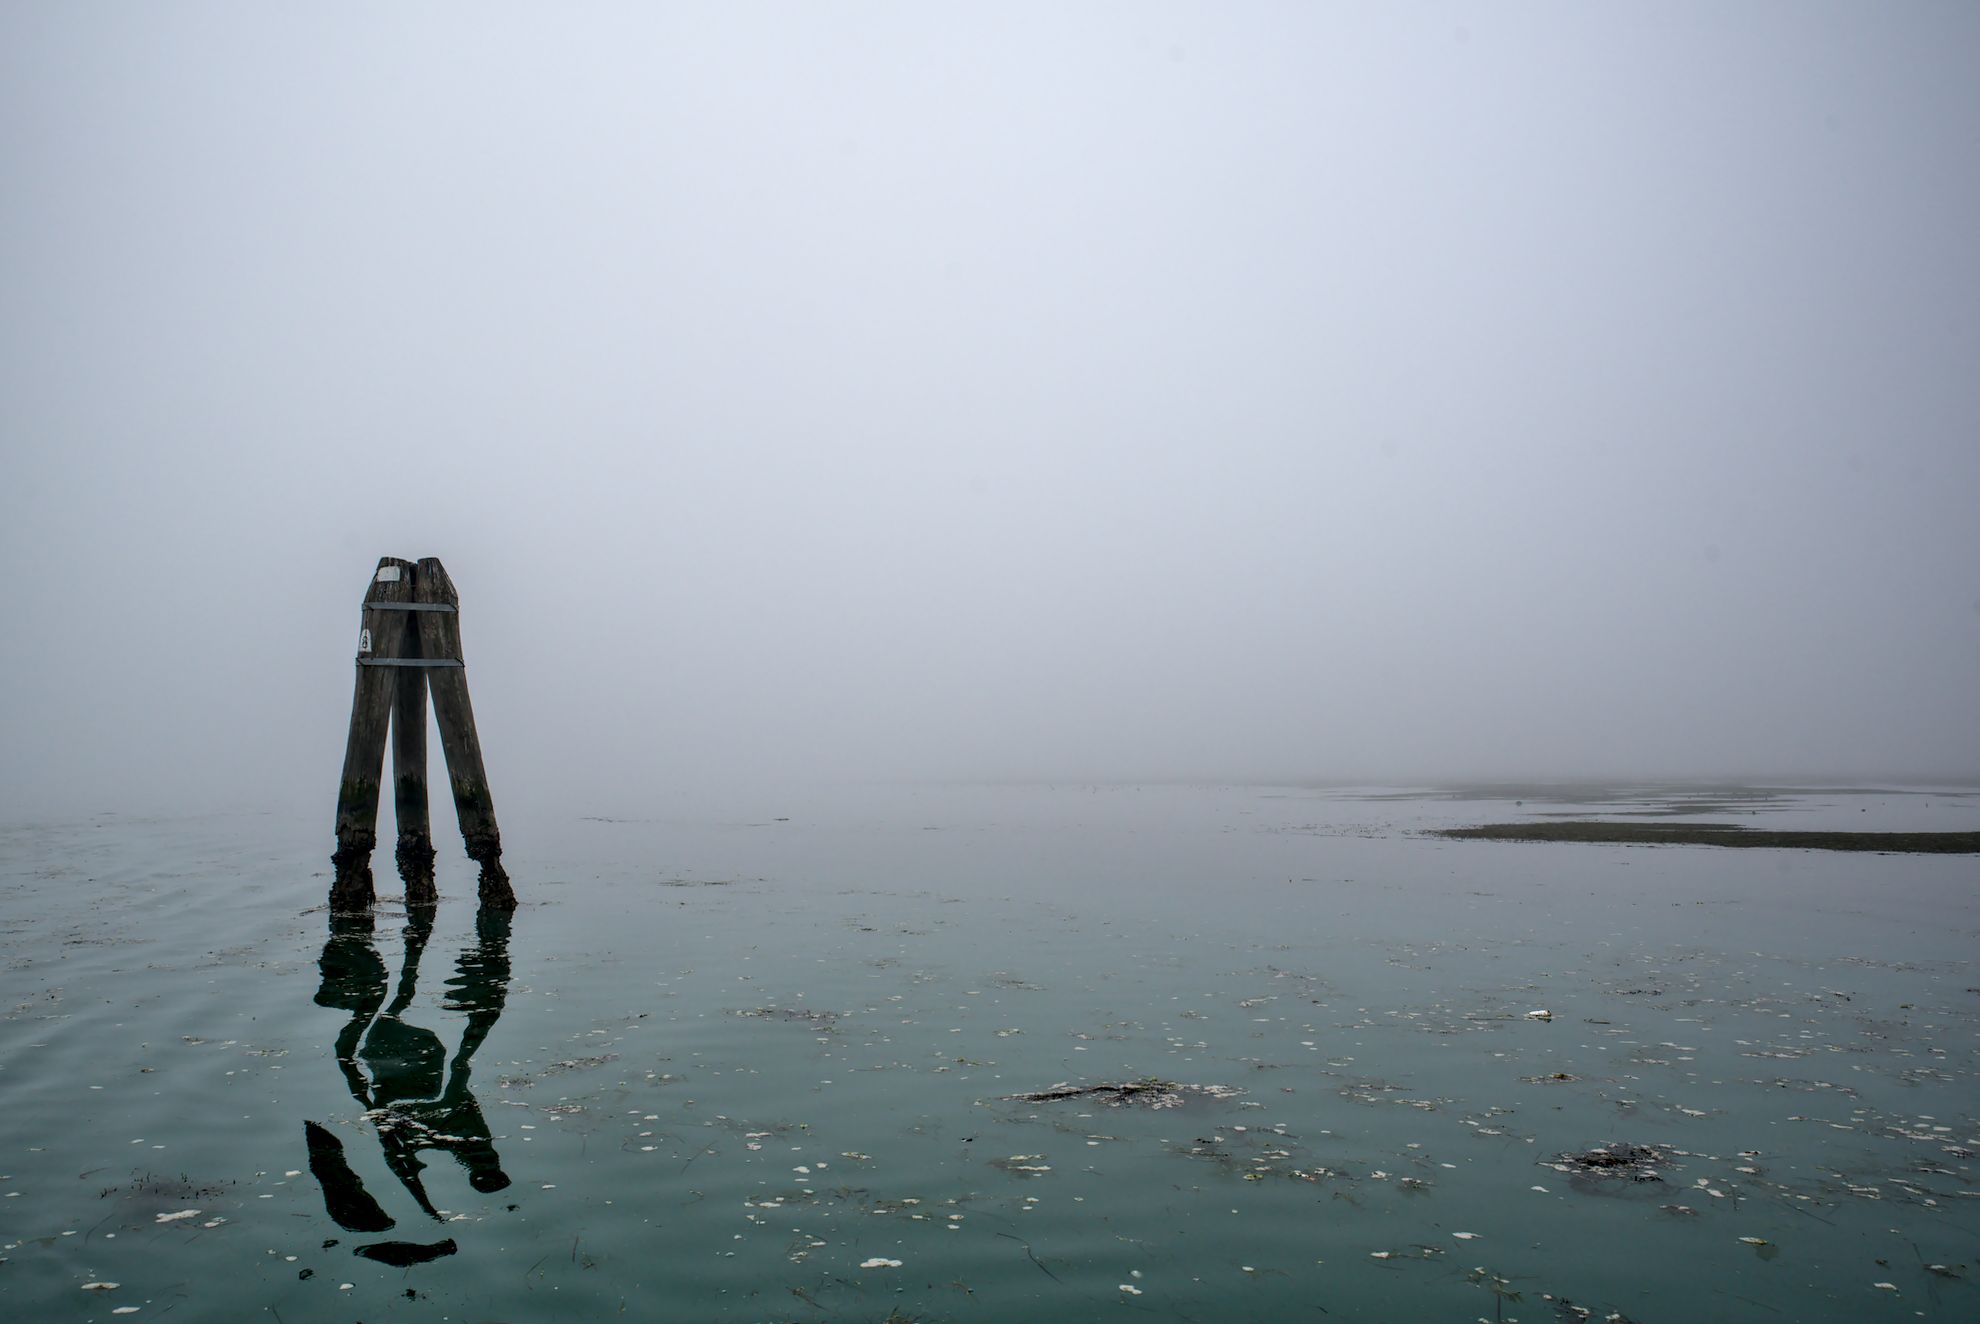 The Venetian lagoon on the fog - briccola with reflection